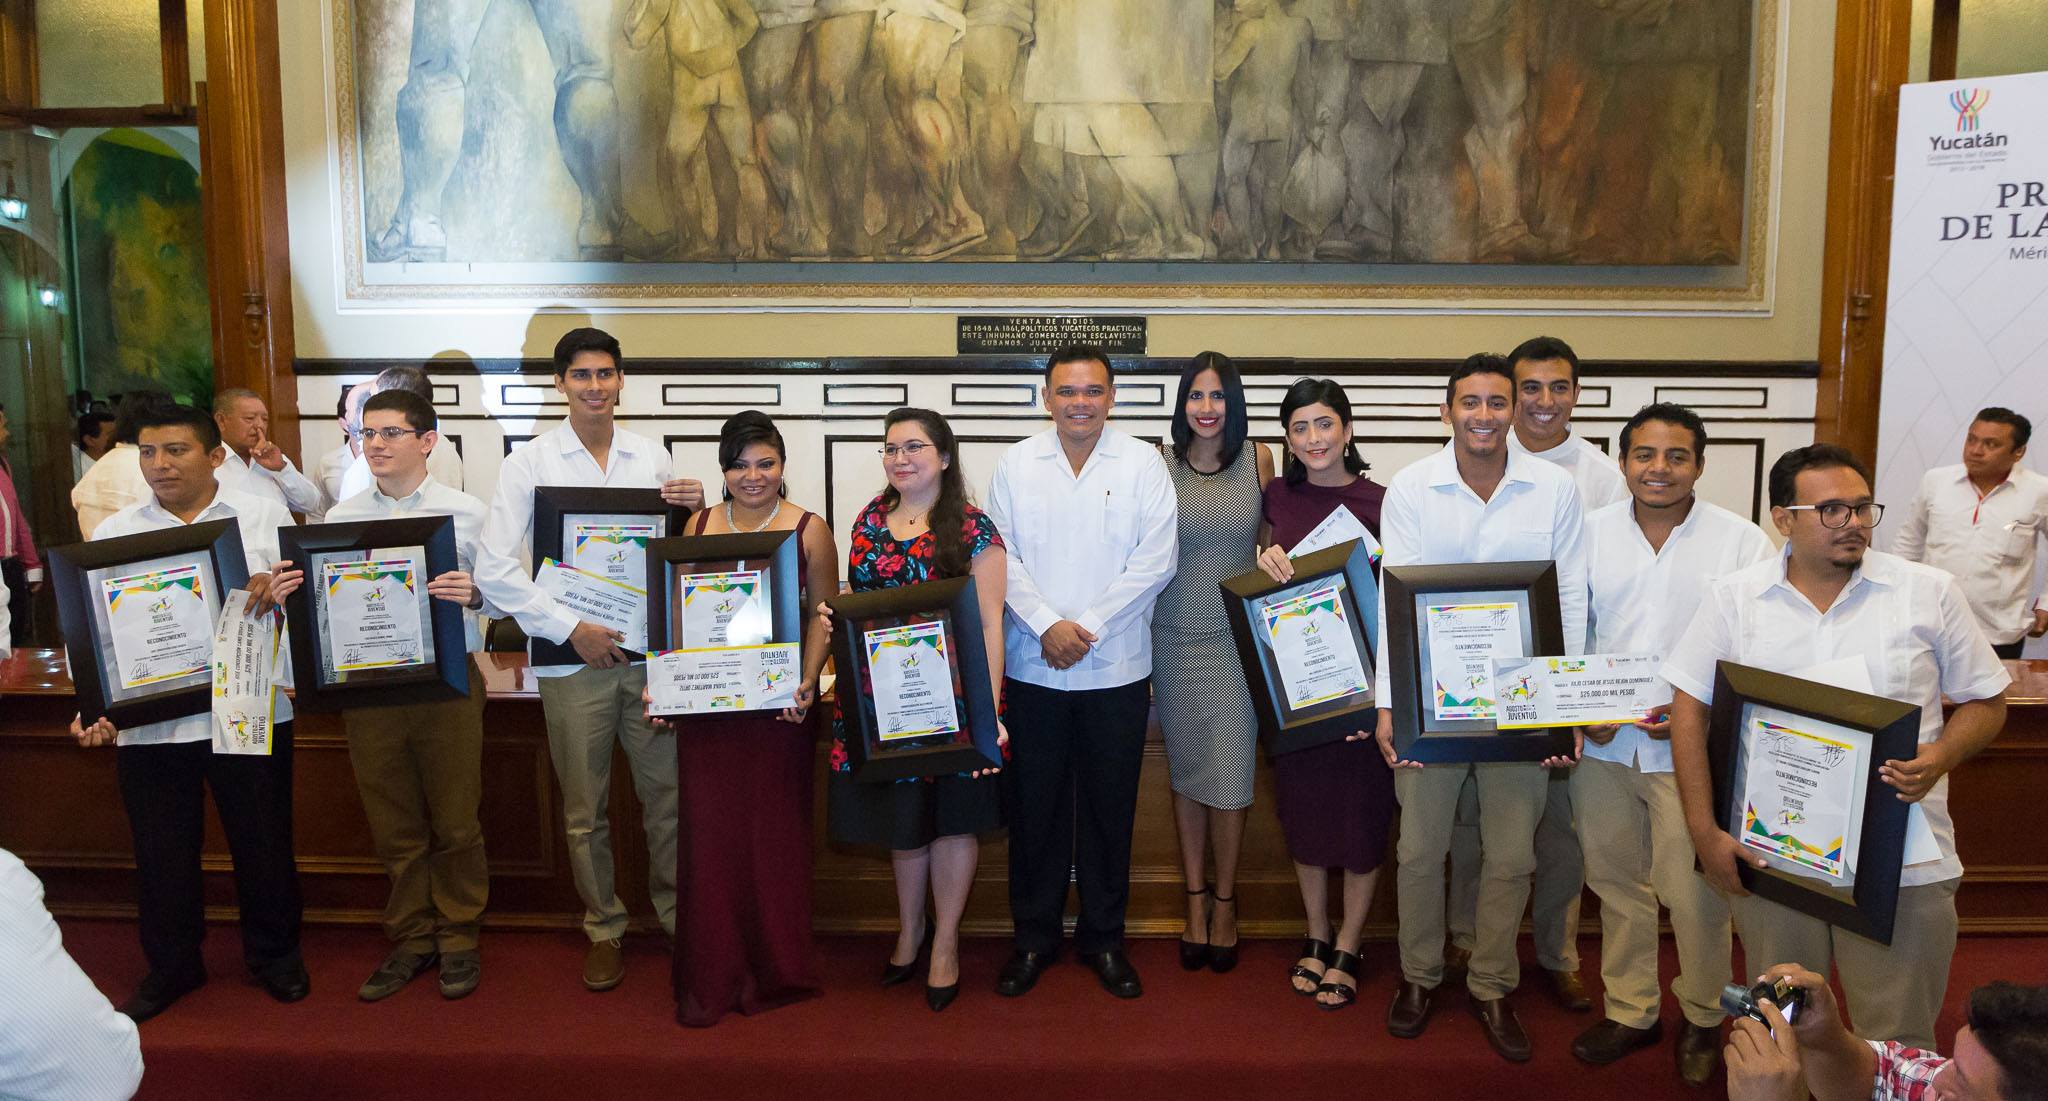 Juventud decidida e innovadora construye el hoy de Yucatán: RZB